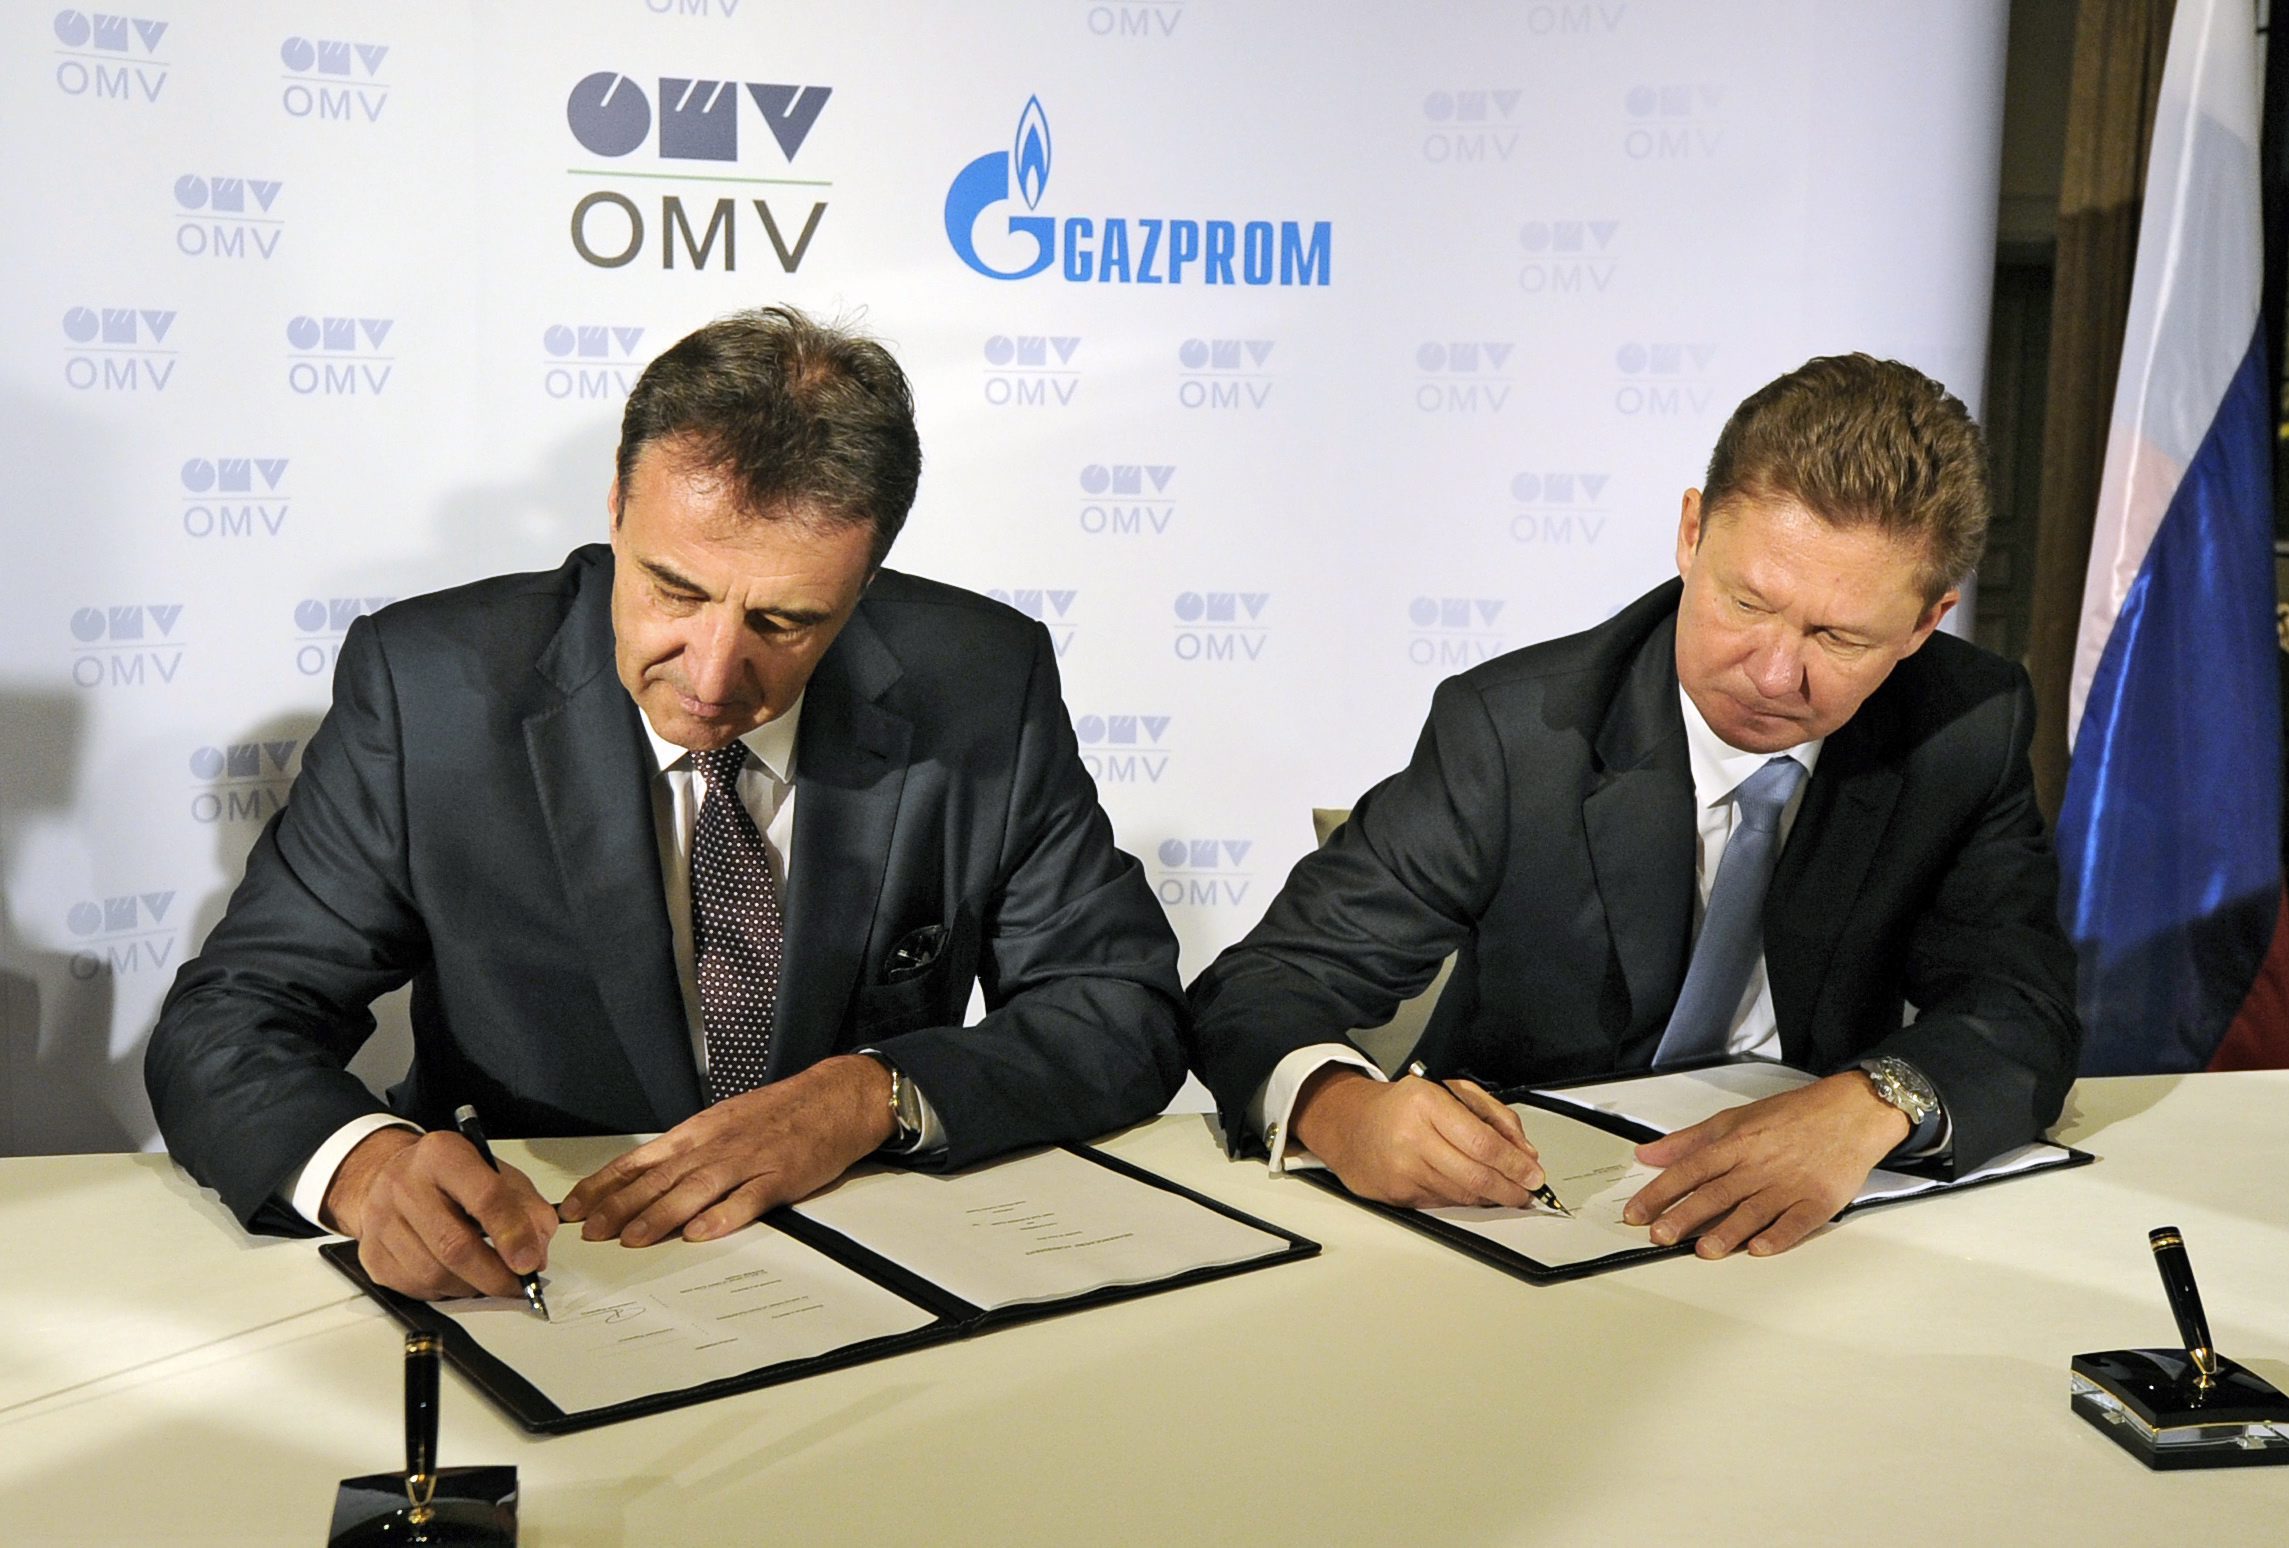 Συμφωνία Gazprom – ÖMV για τον South Stream